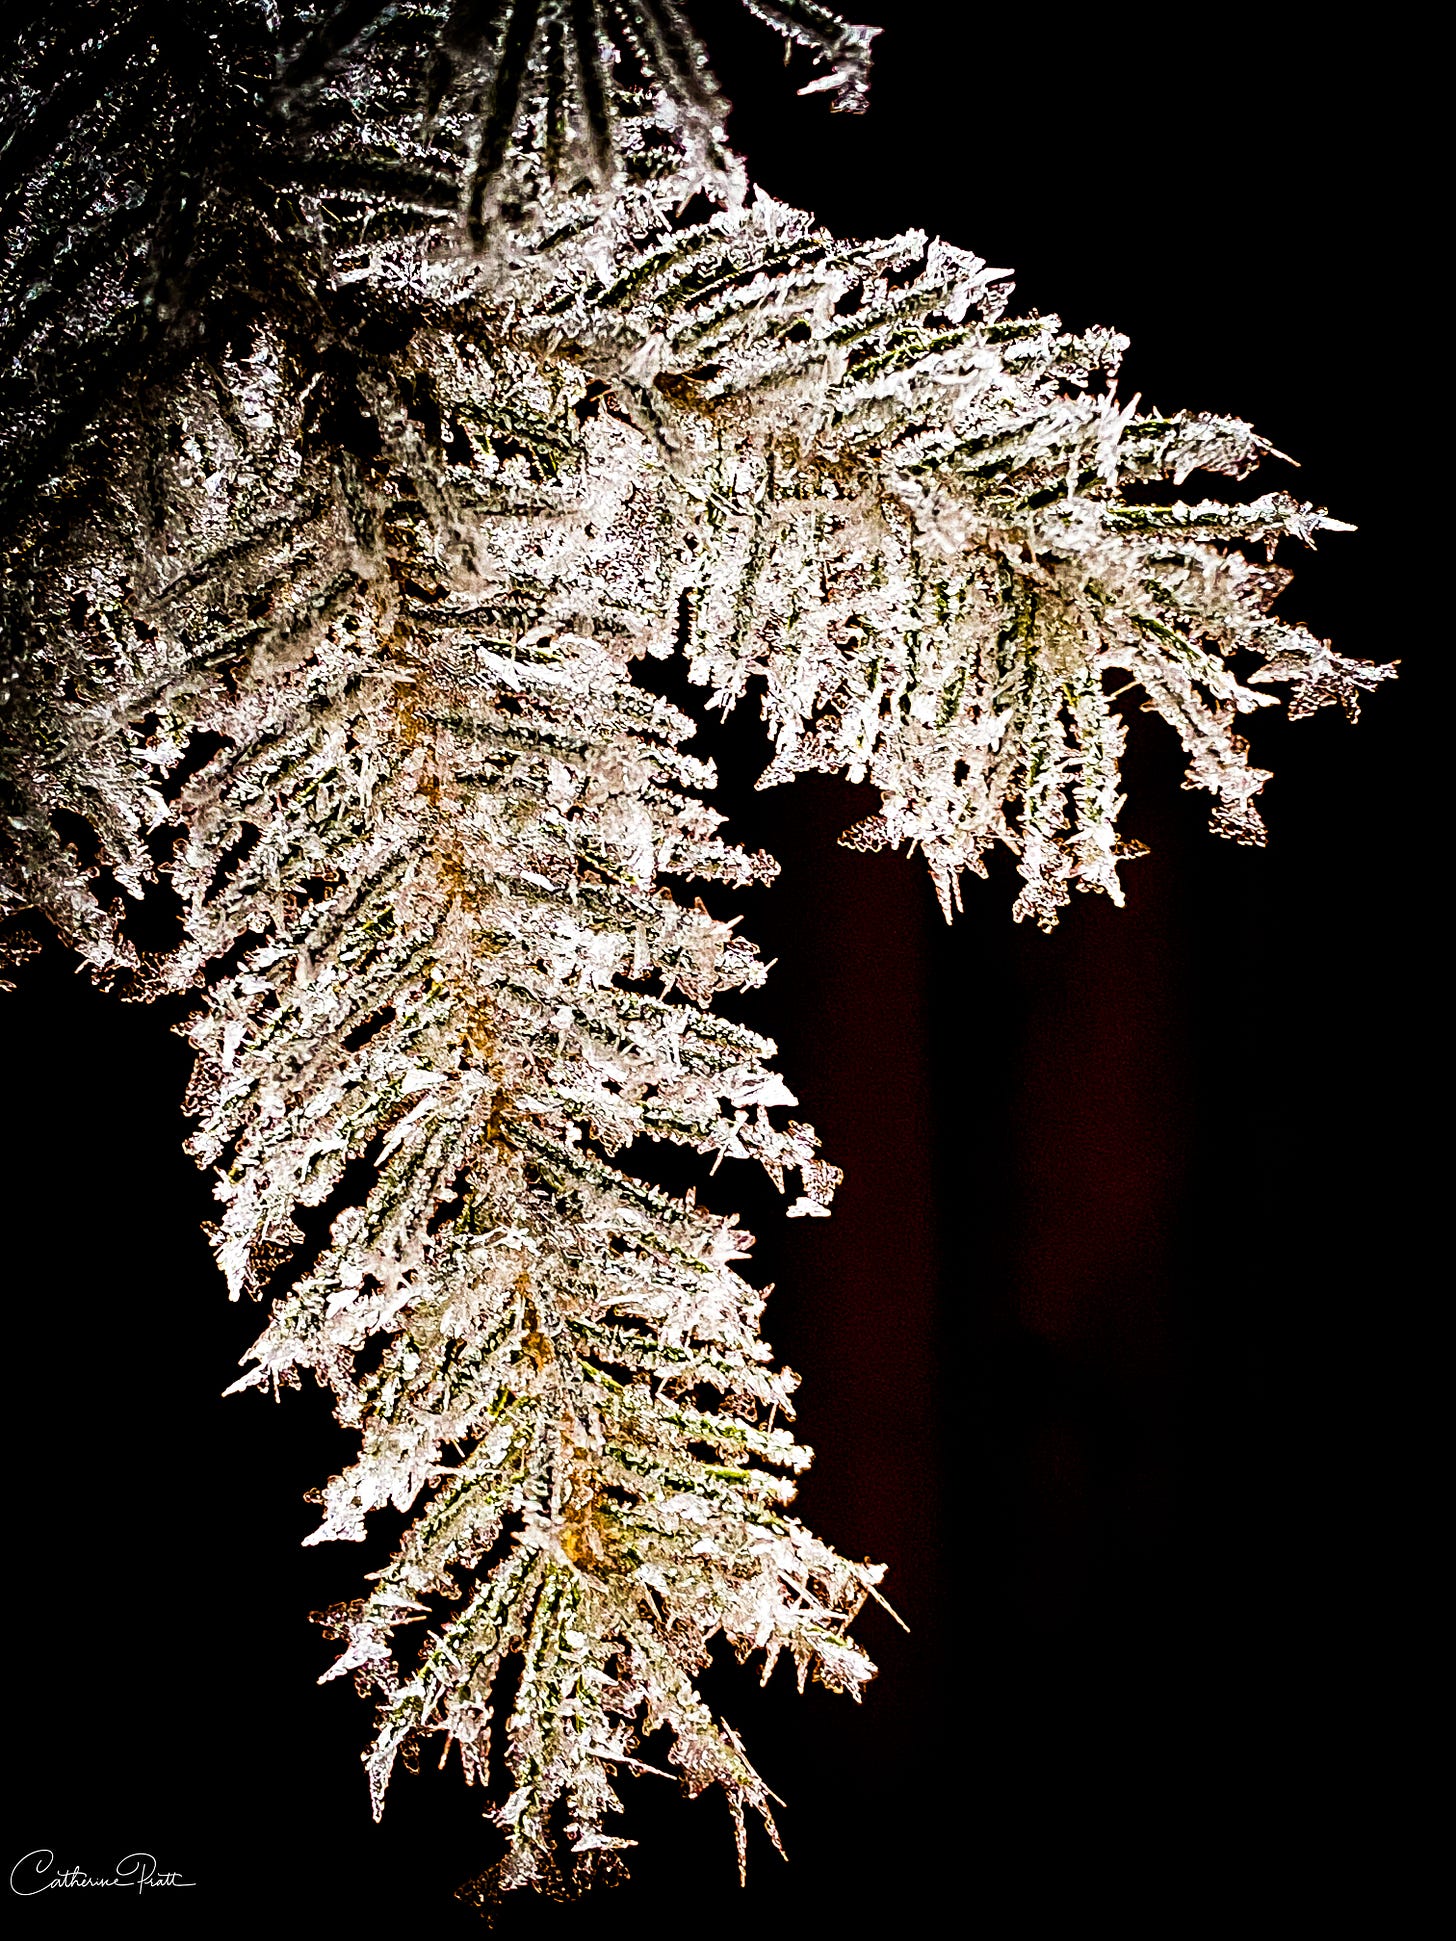 hoar frost on tree branch